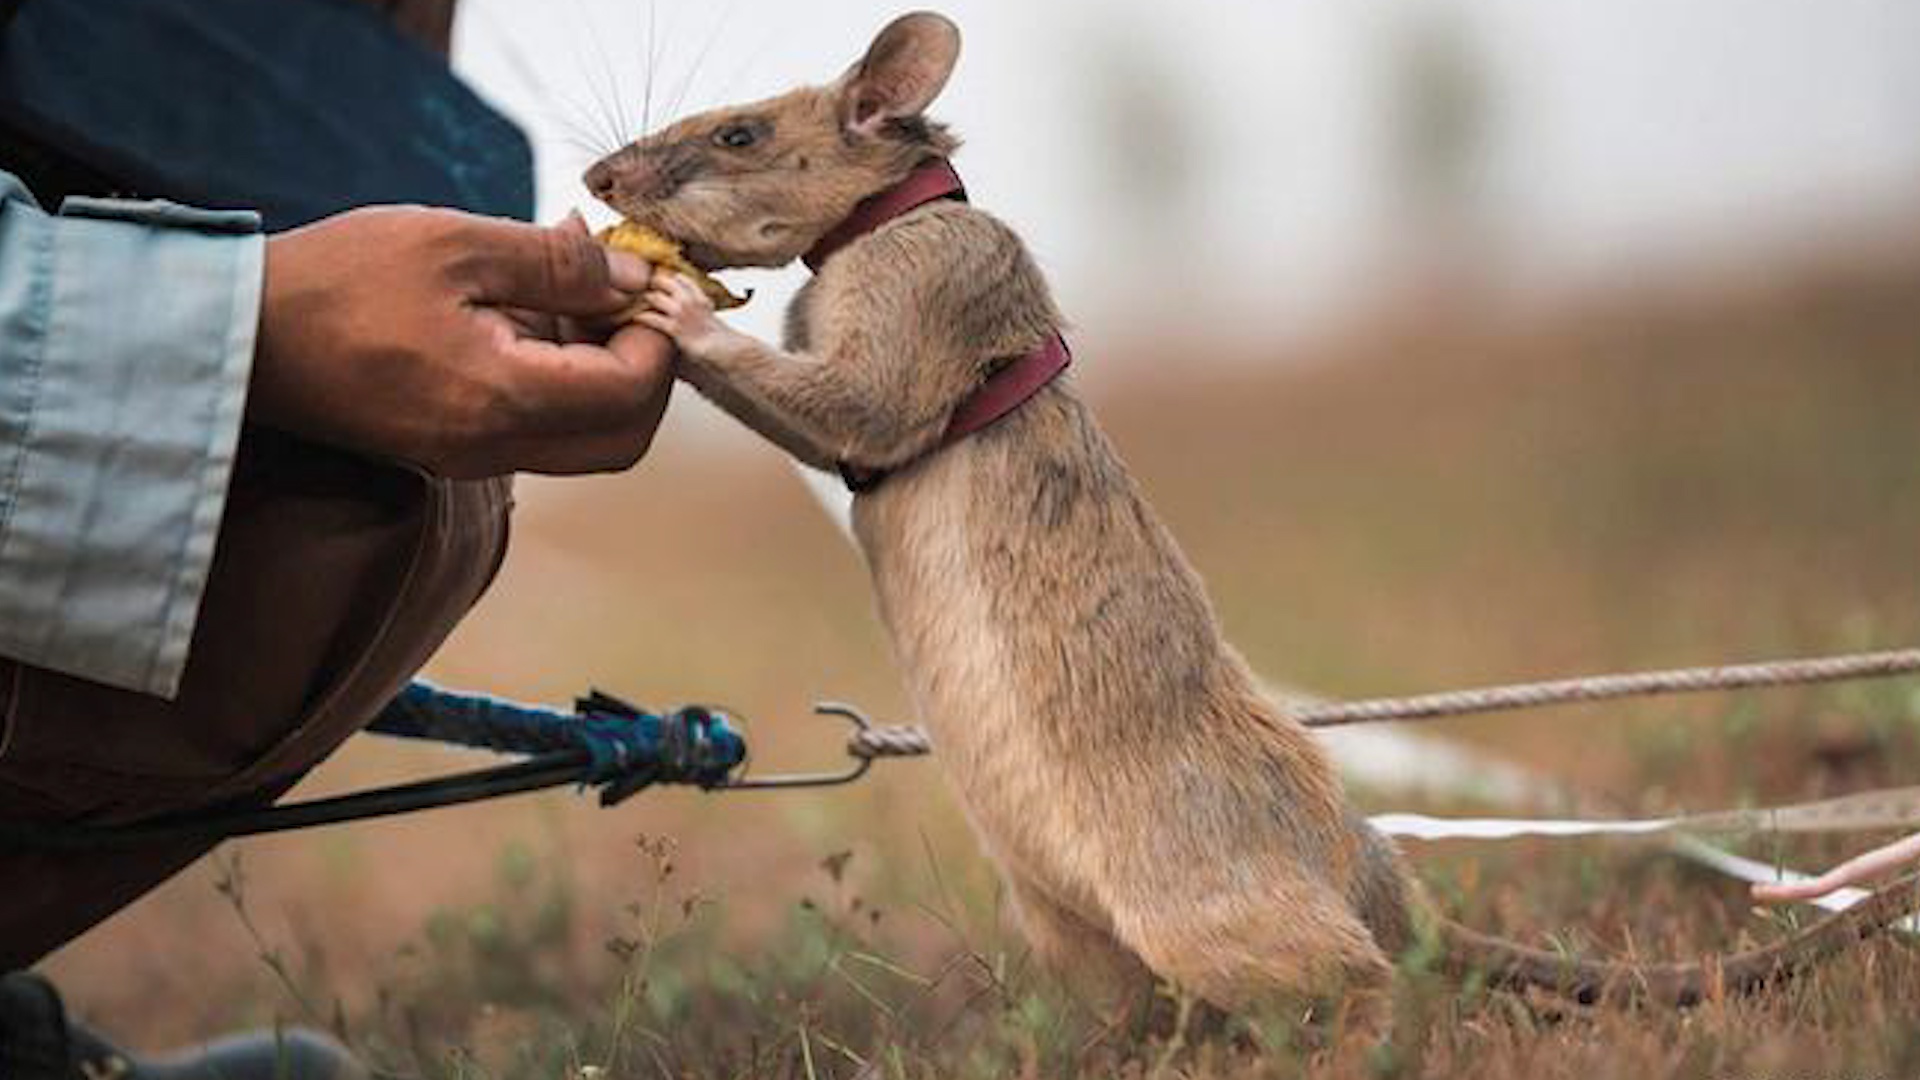 Magawa là một thành viên của bầy chuột được nuôi với mục đích dò tìm mìn trên mặt đất